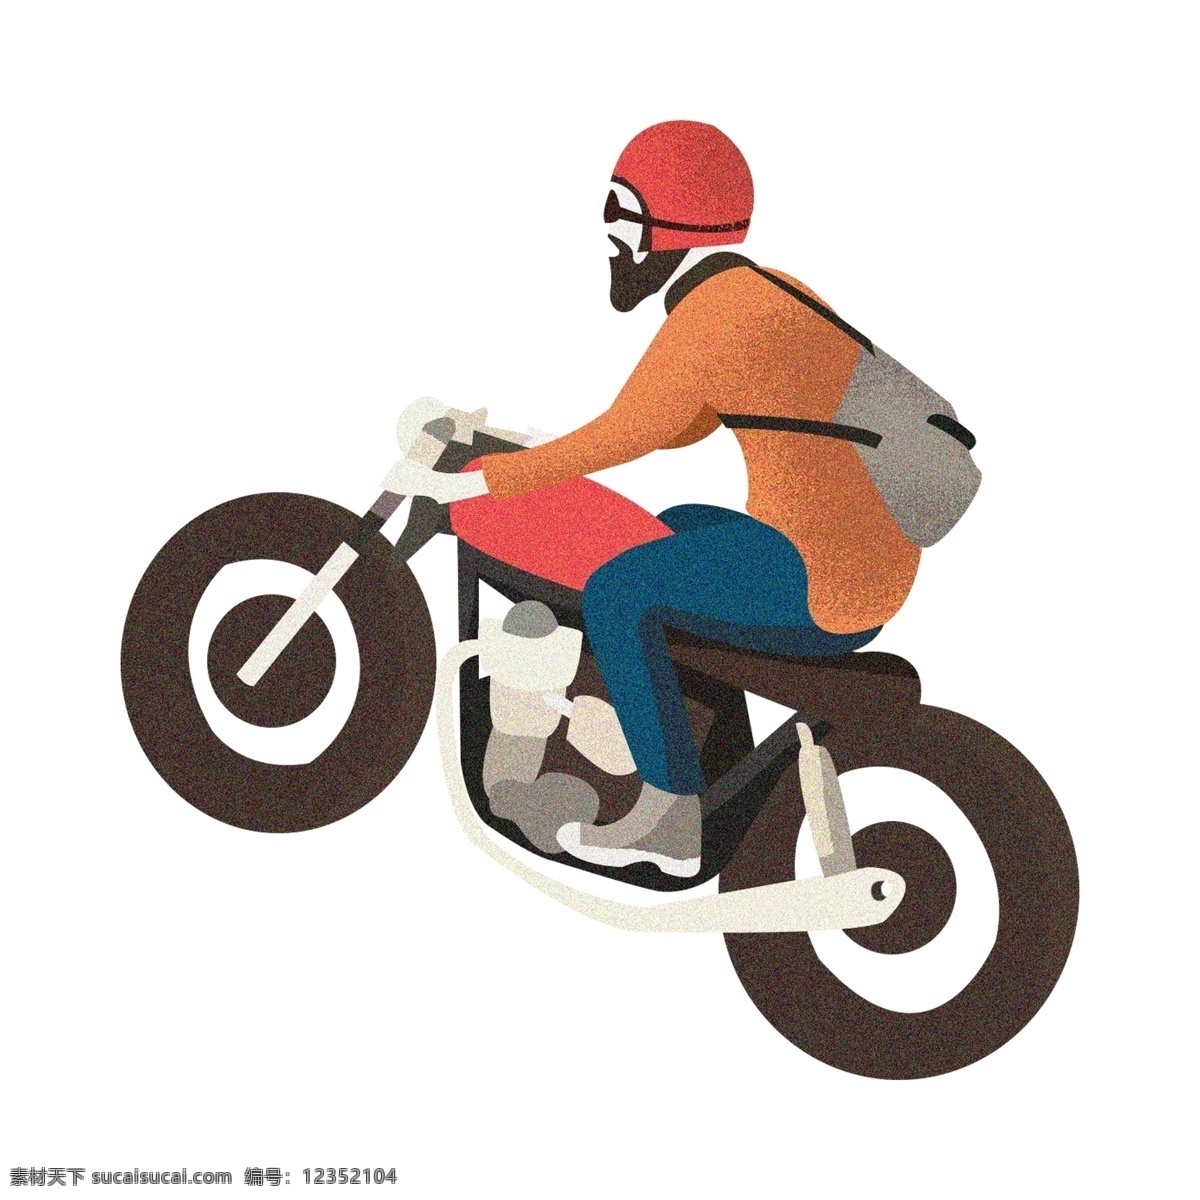 朋 克 骑 摩托车 少年 装饰 元素 装饰元素 手绘 骑行 帽子 背包 朋克